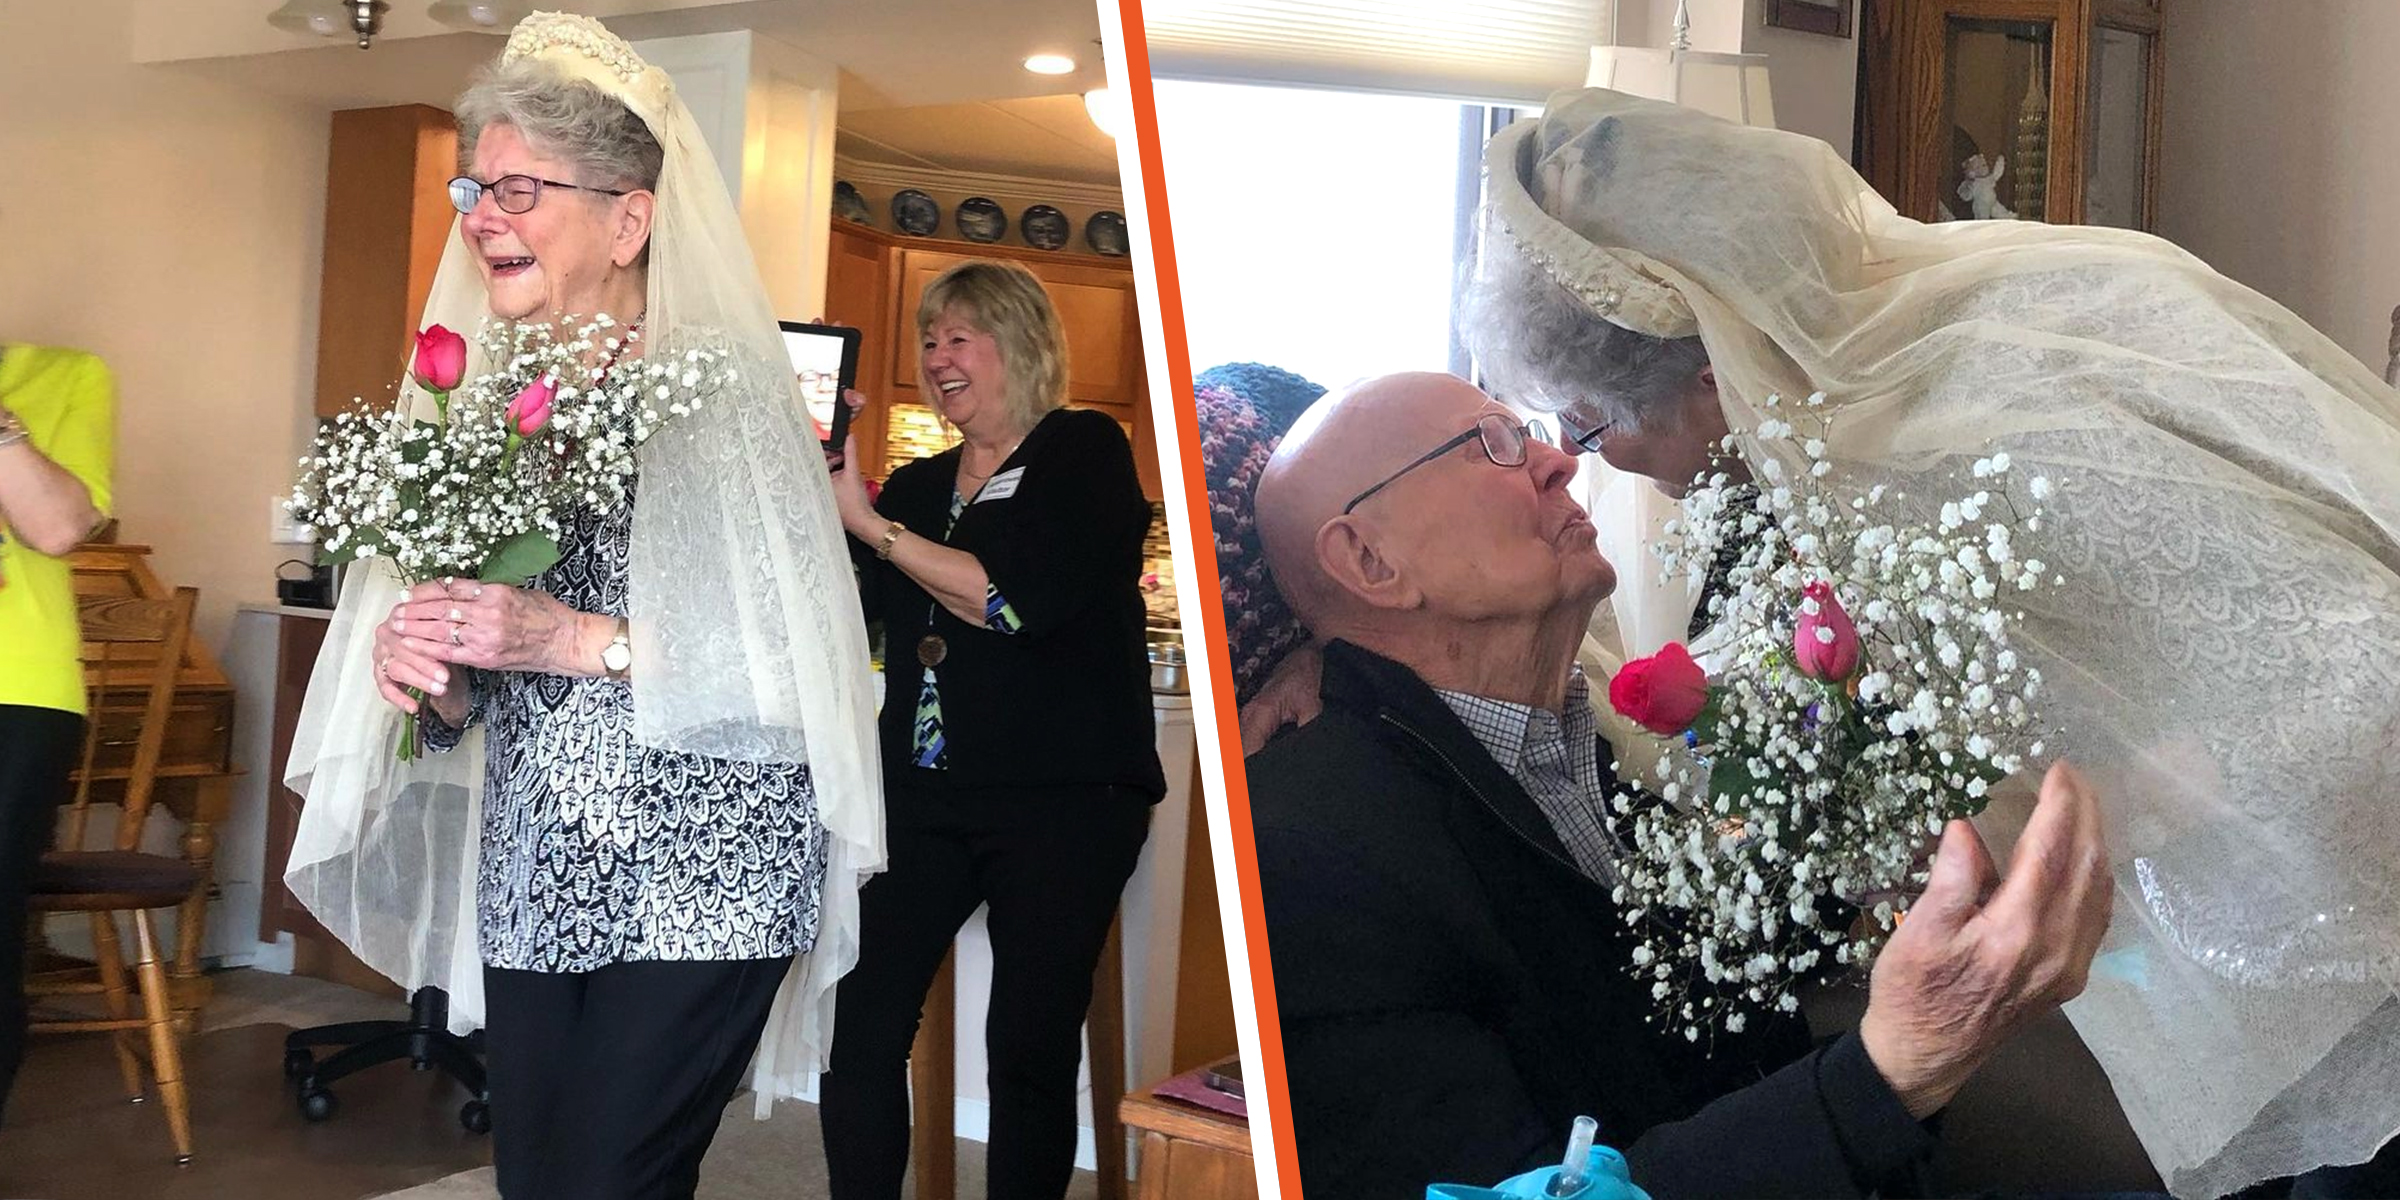 Ein Paar feiert seinen 75. Hochzeitstag | Quelle: instagram.com/chelseadyck